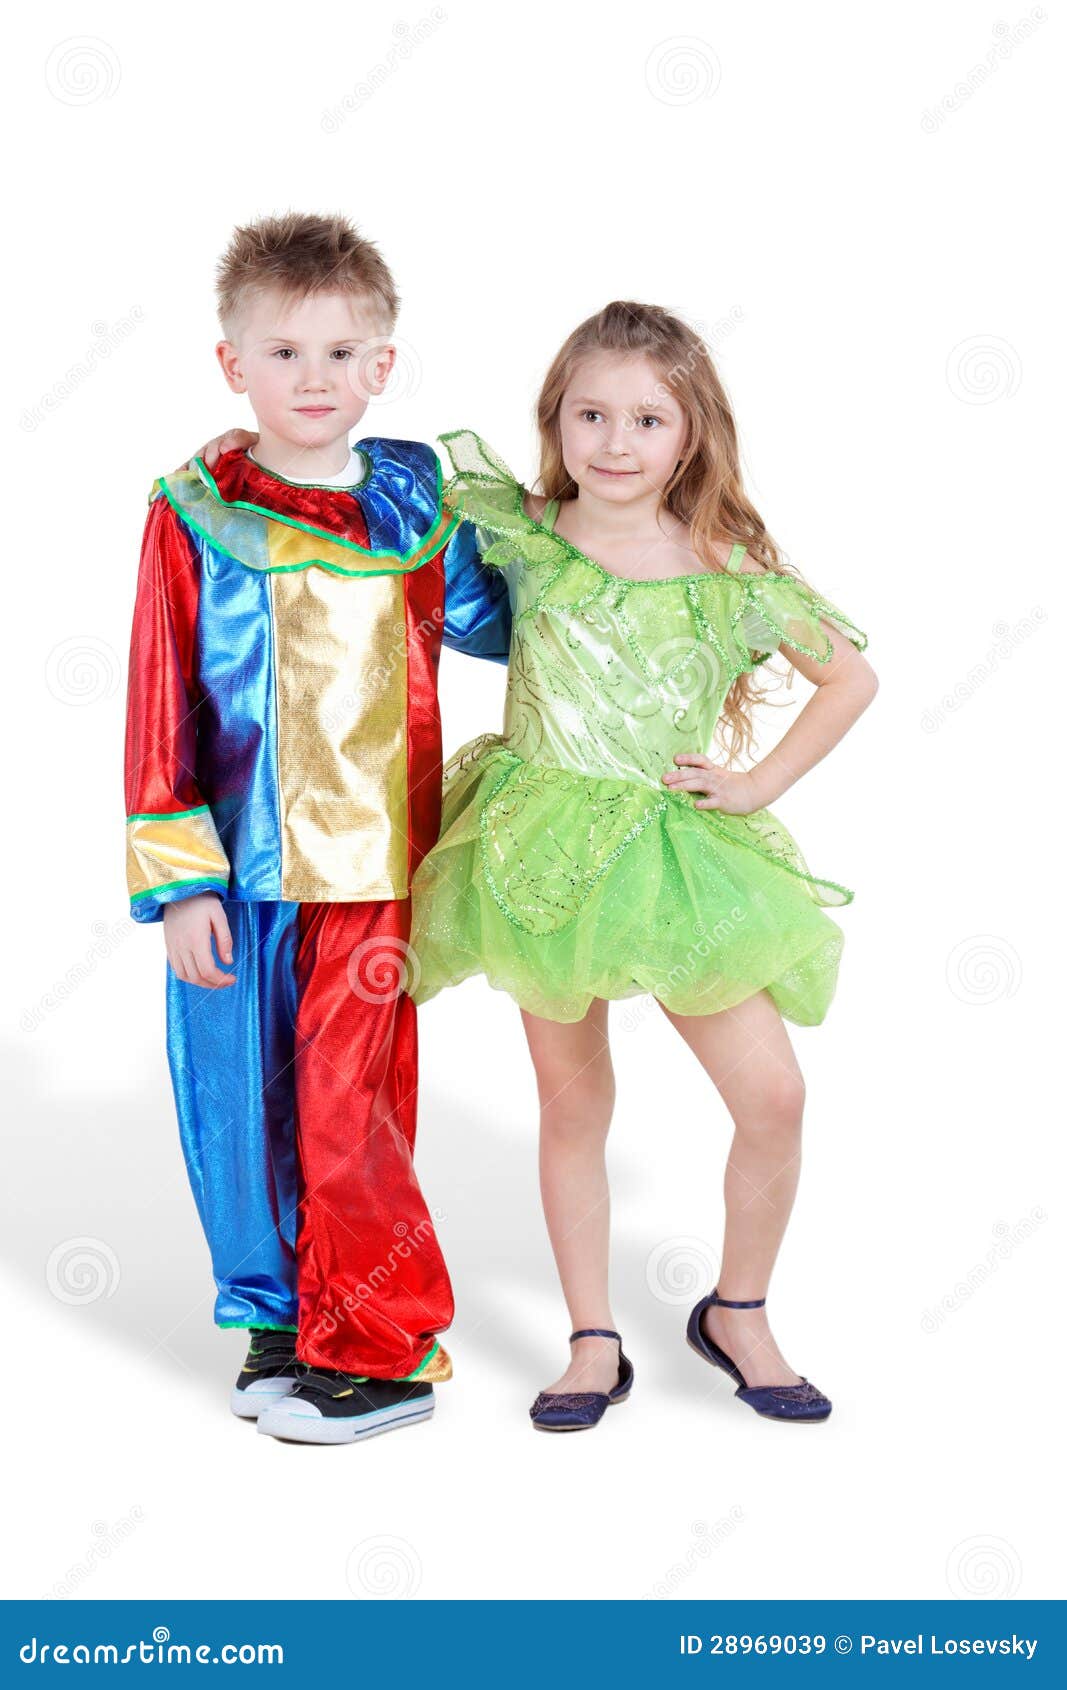 rijm te veel Communisme Weinig Jongen En Meisje in Carnaval Kostuums Bevinden Zich Stock Afbeelding  - Image of luim, kinderjaren: 28969039